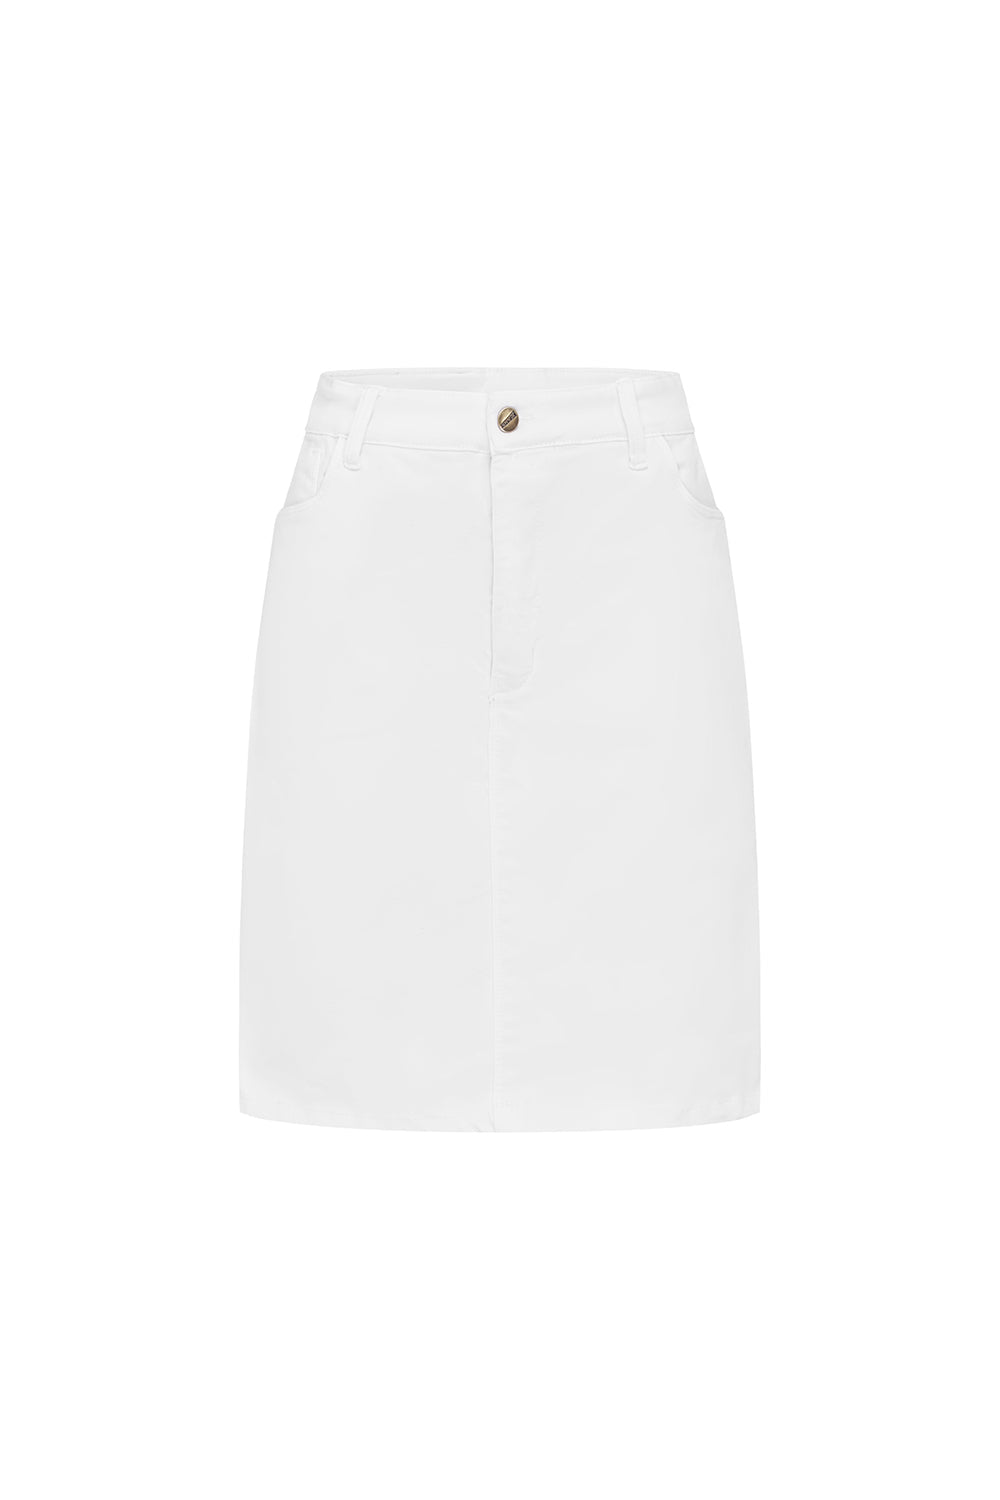 Amber White Denim Skirts Skirt